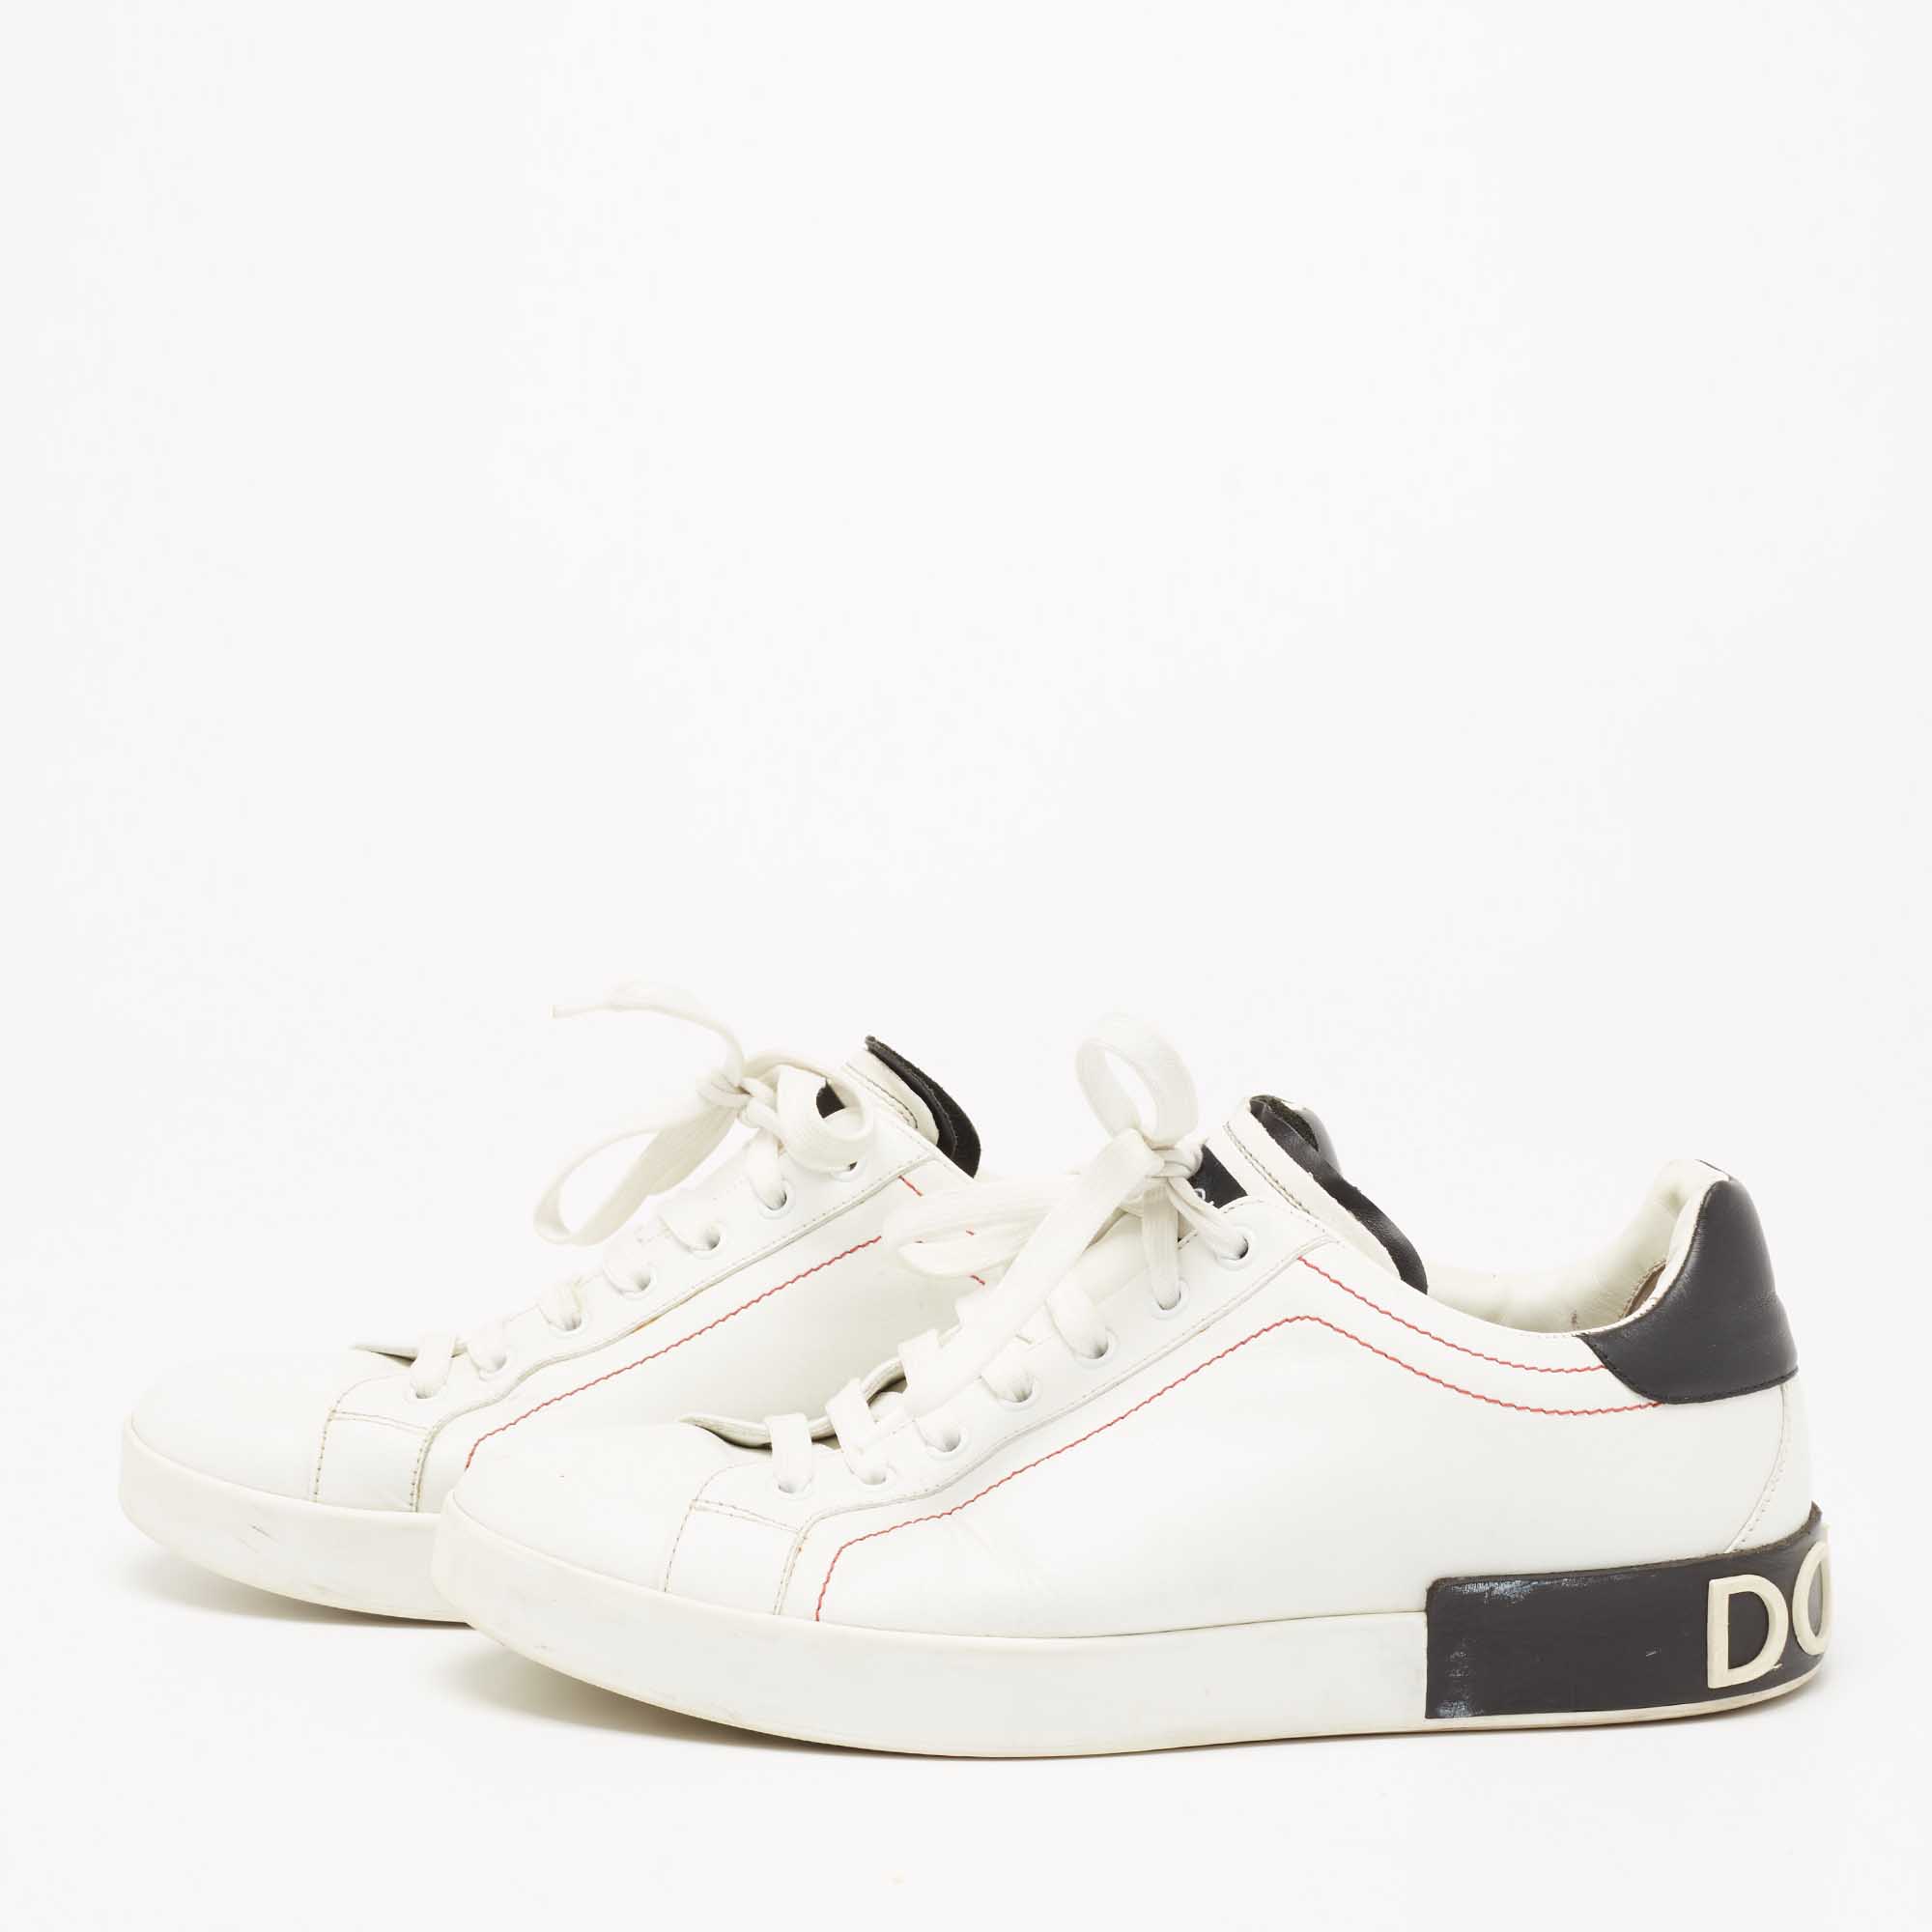 

Dolce & Gabbana Black/White Nappa Leather Portofino Sneakers Size